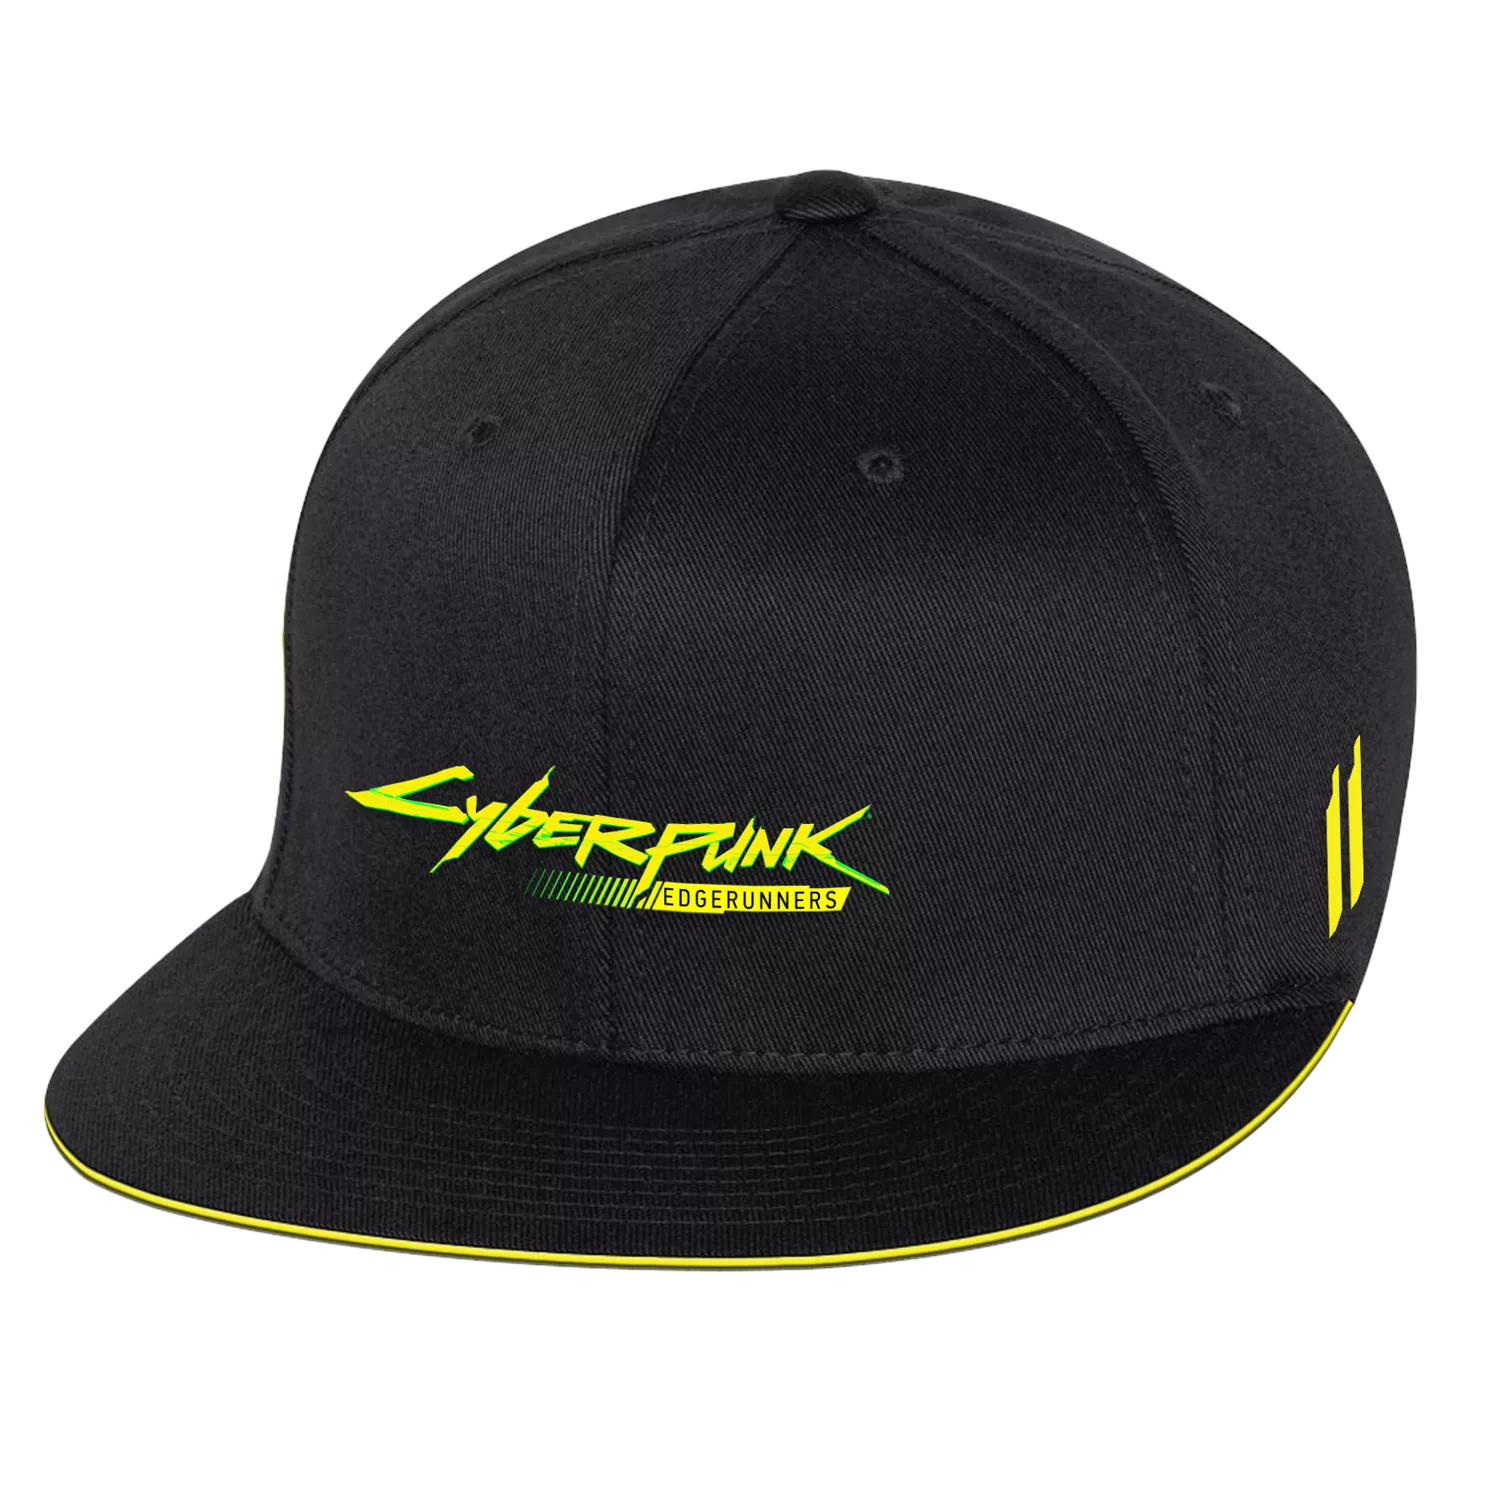 Edgerunners Cyberware Hat Cover